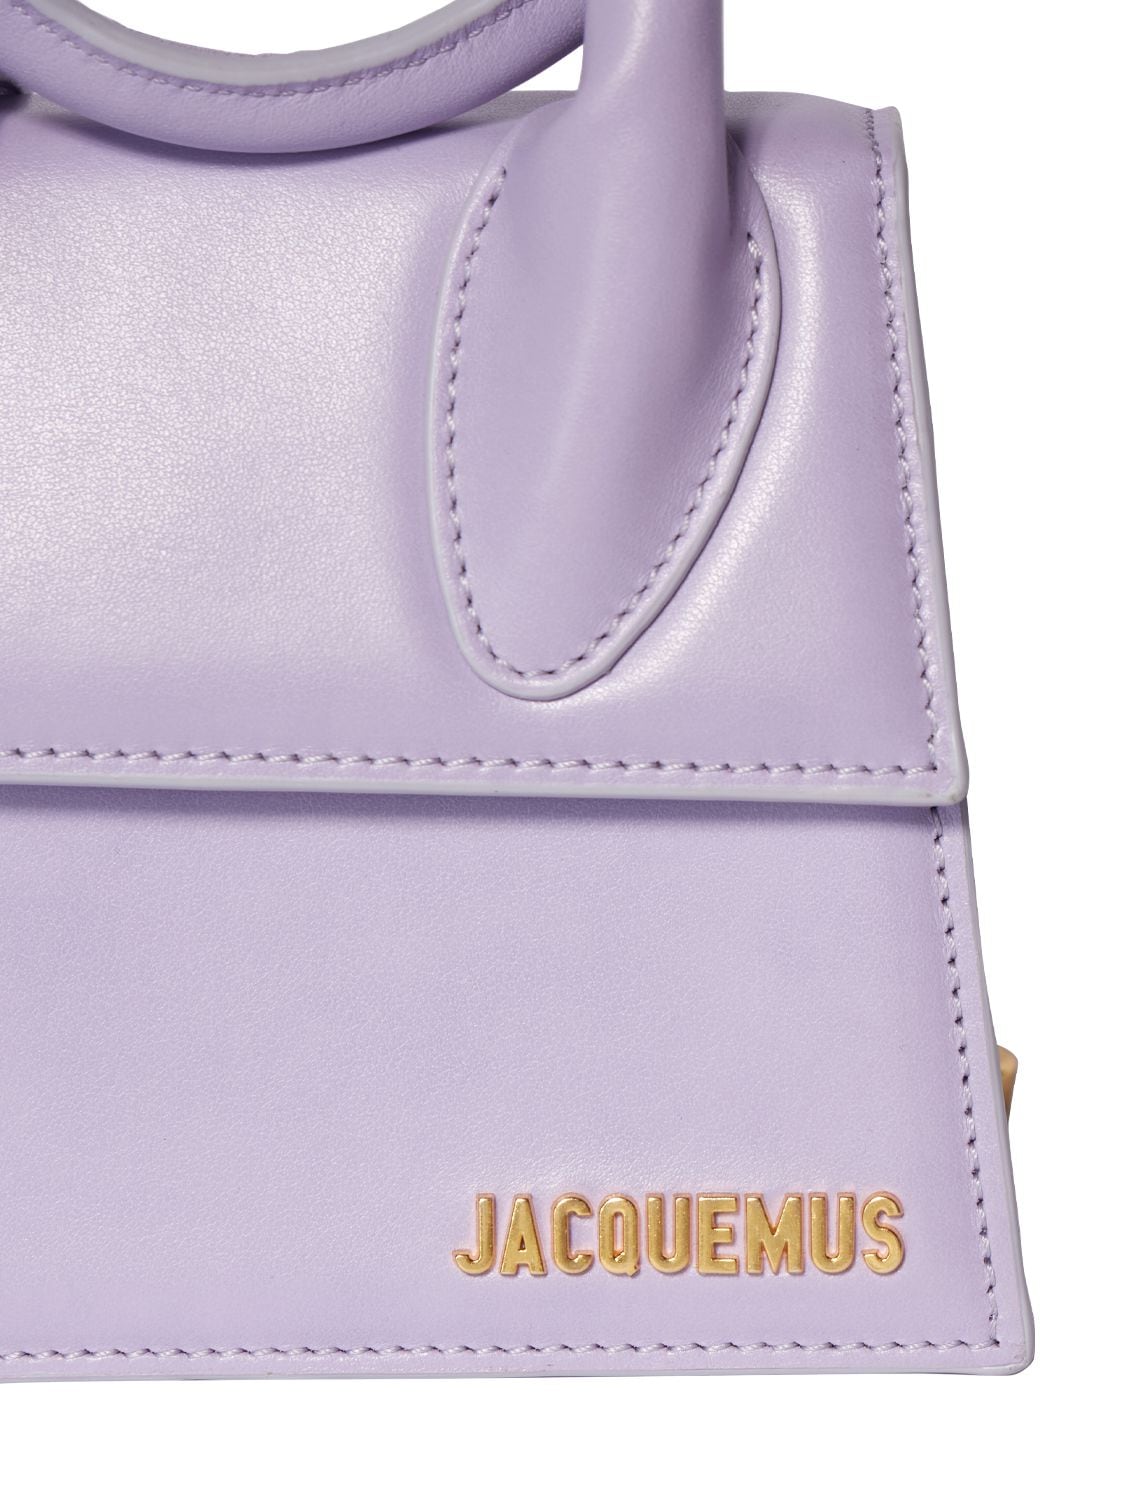 Jacquemus Le Chiquito Top-Handle Bag - Purple